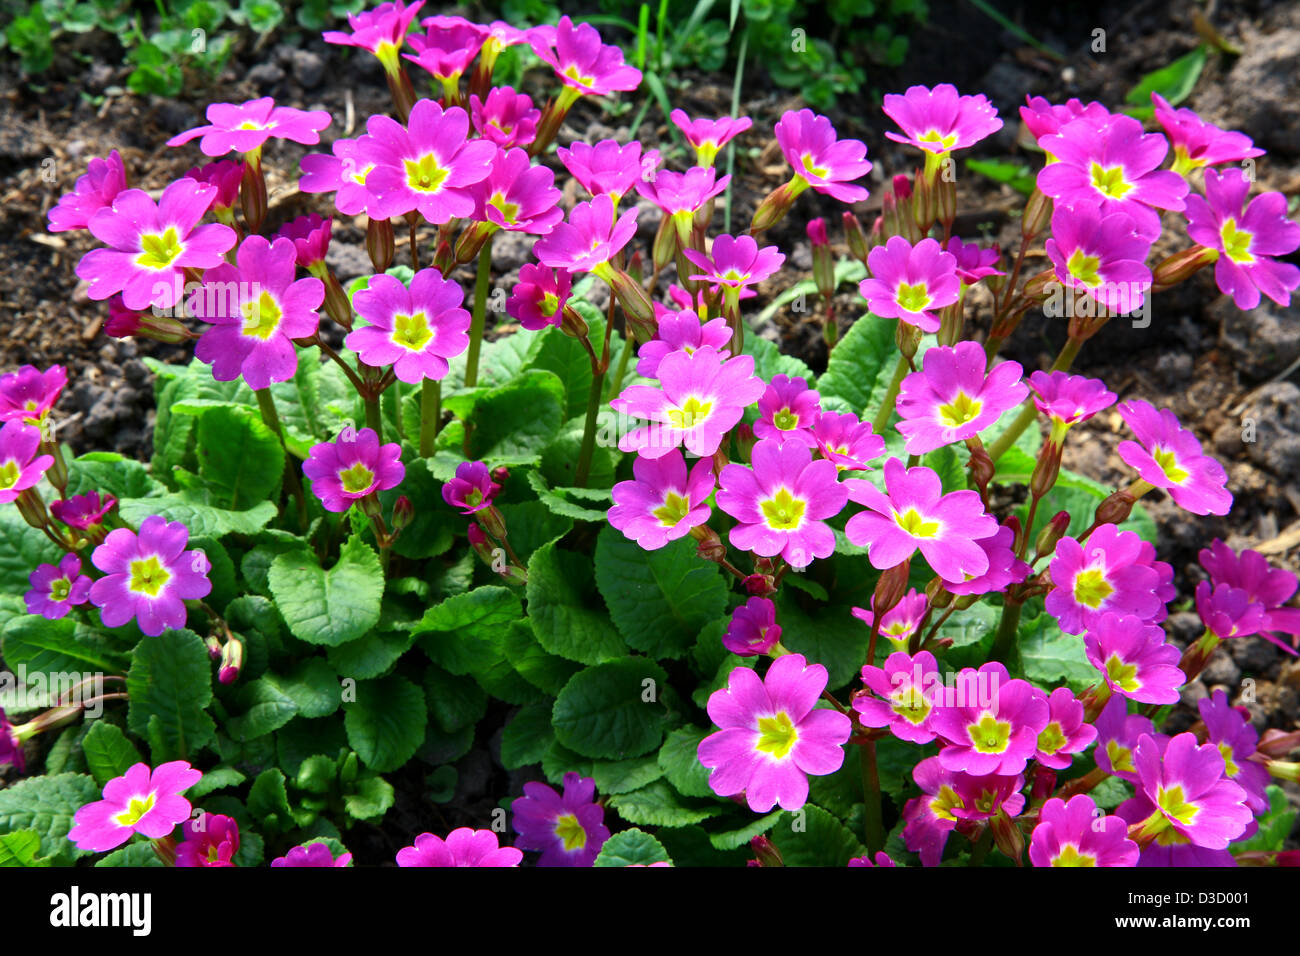 Primula in the garden Stock Photo